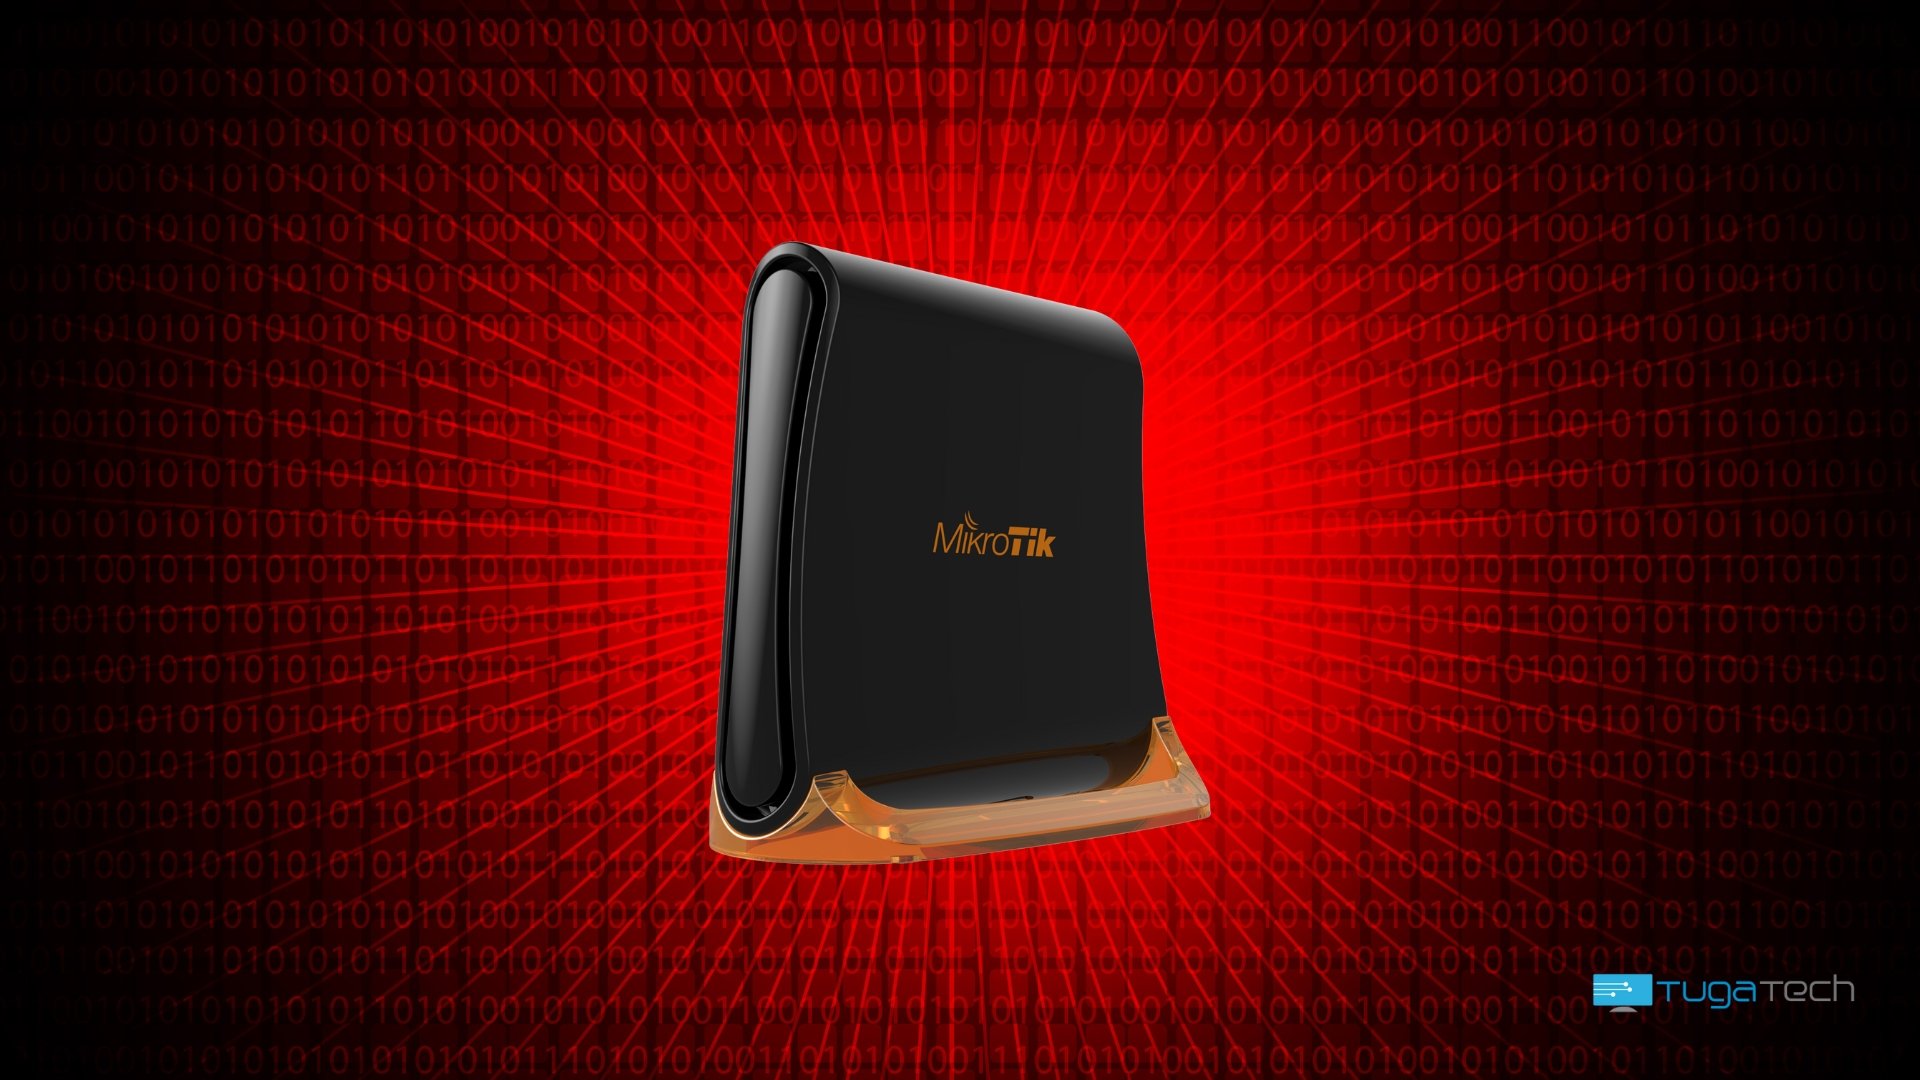 Router da MikroTik com fundo vermelho de código binário